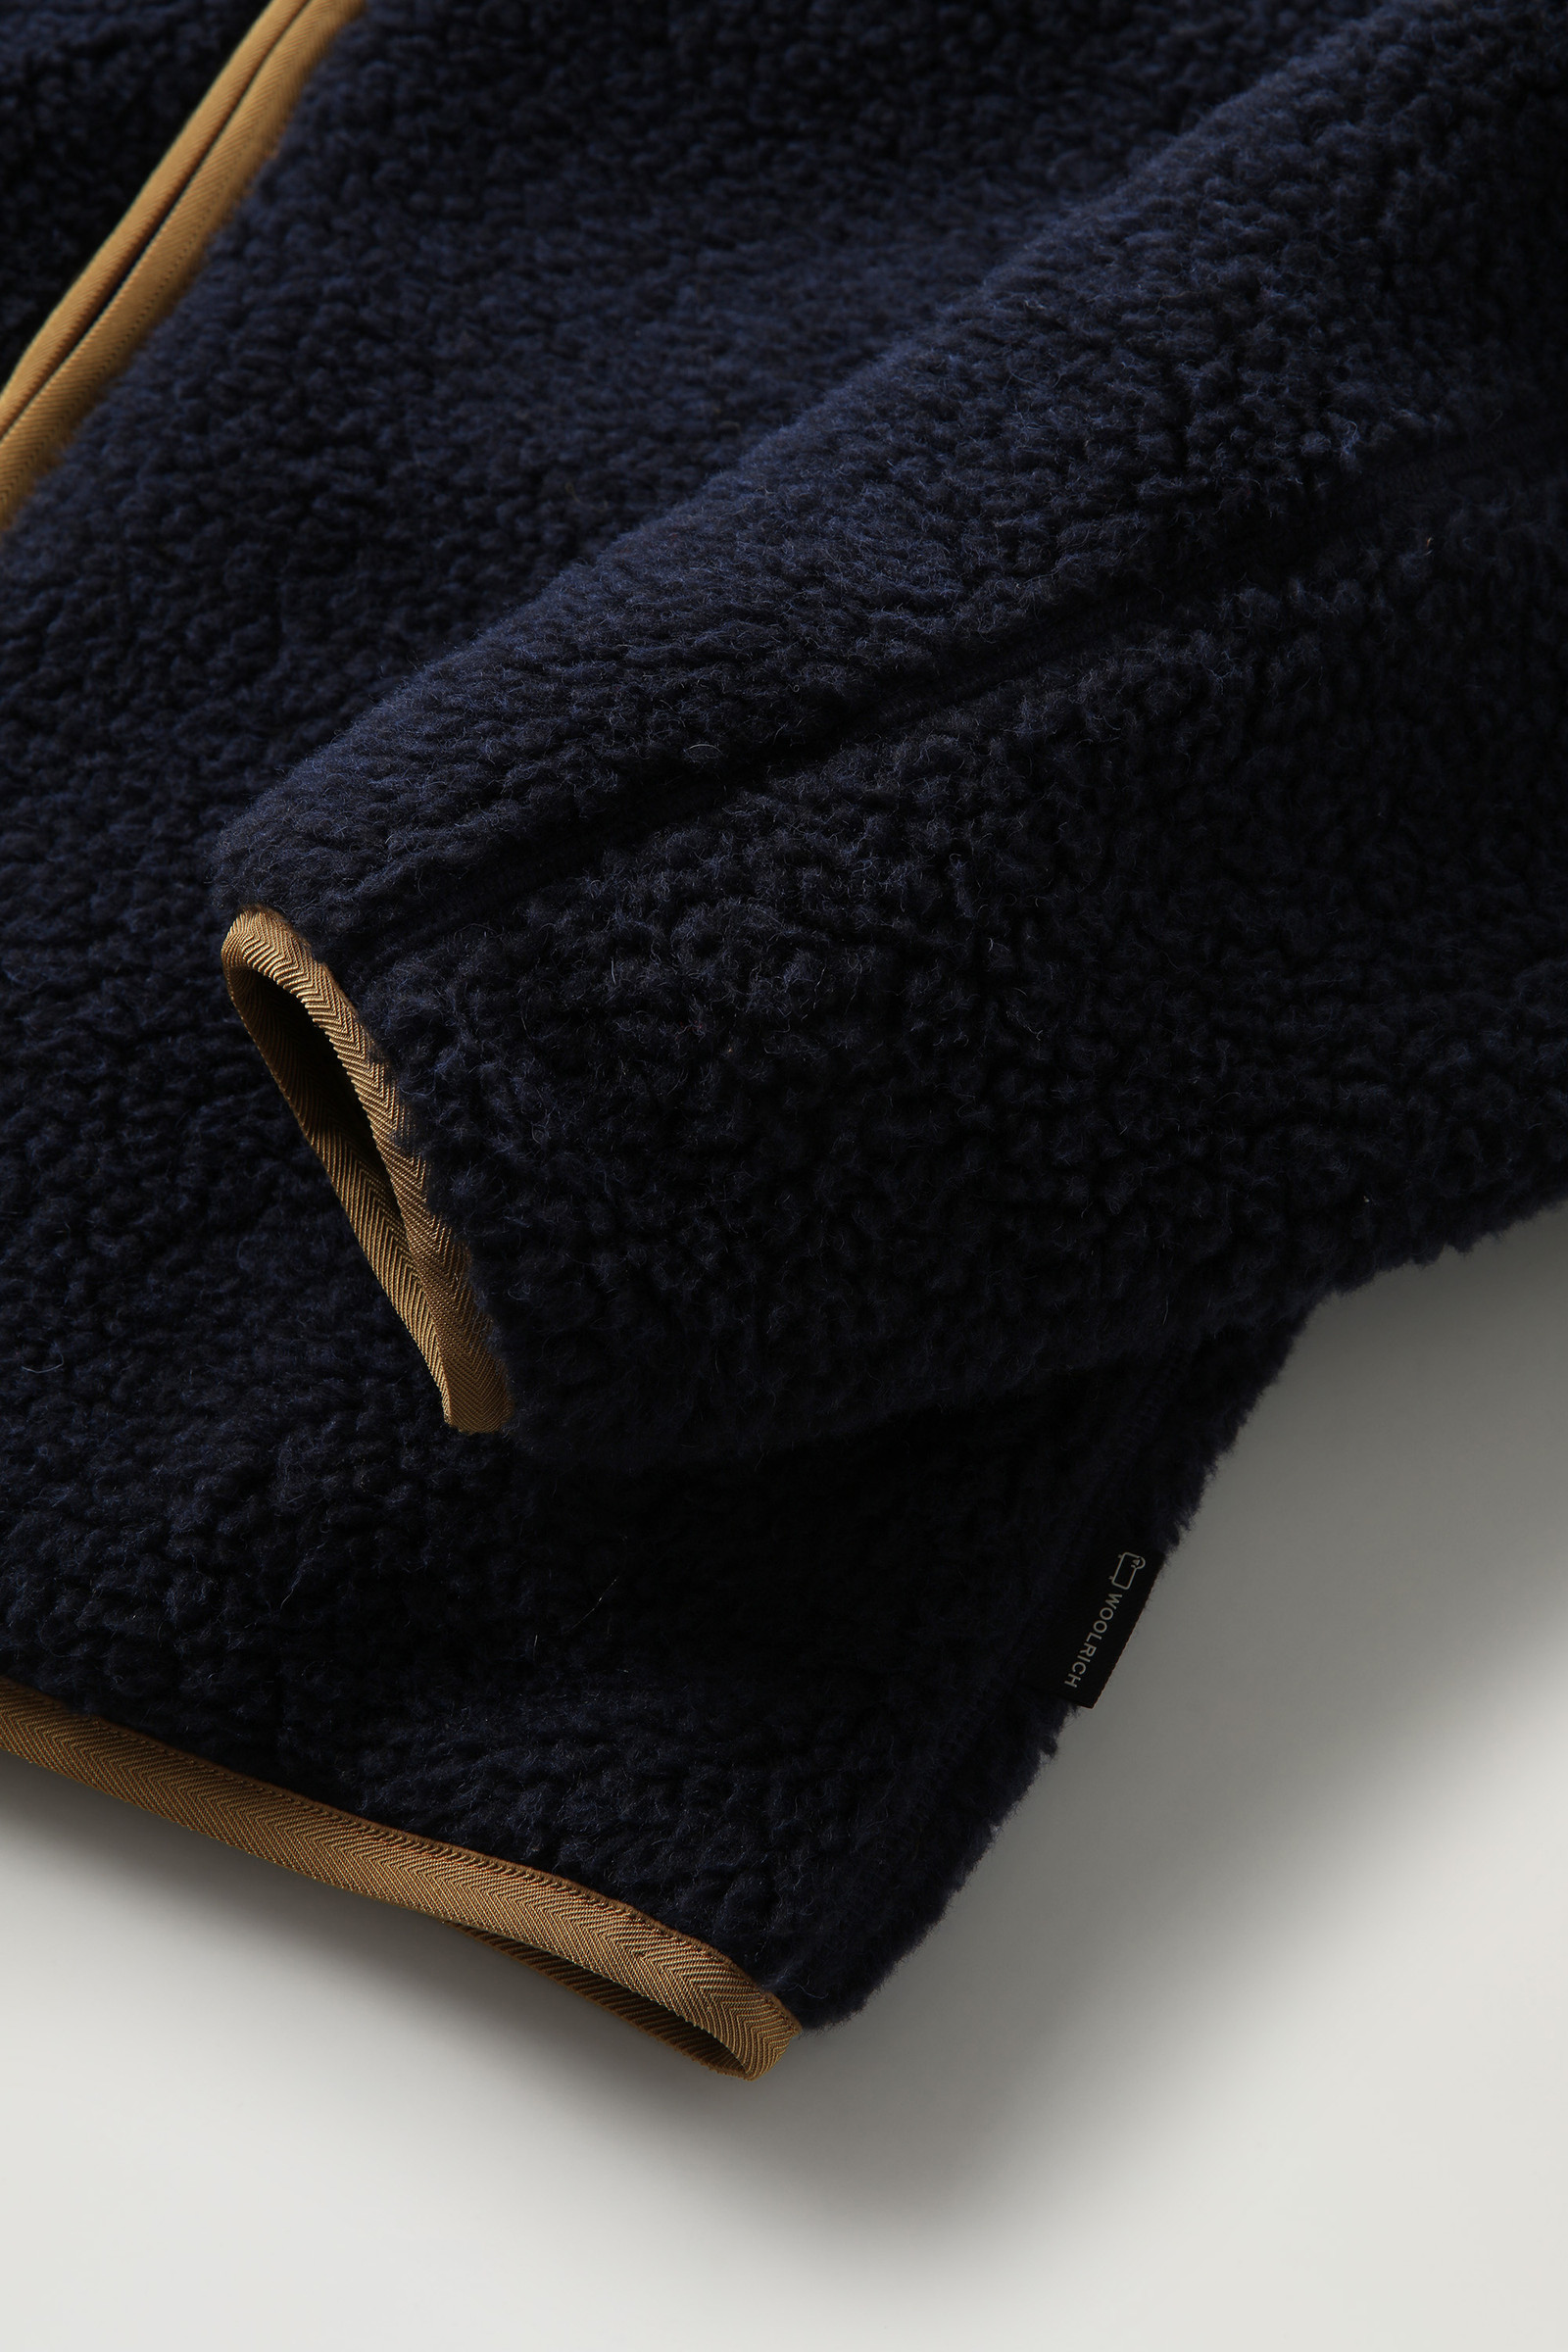 Reversible Curly Fleece in Sherpa and Taslan nylon - Men - Blue